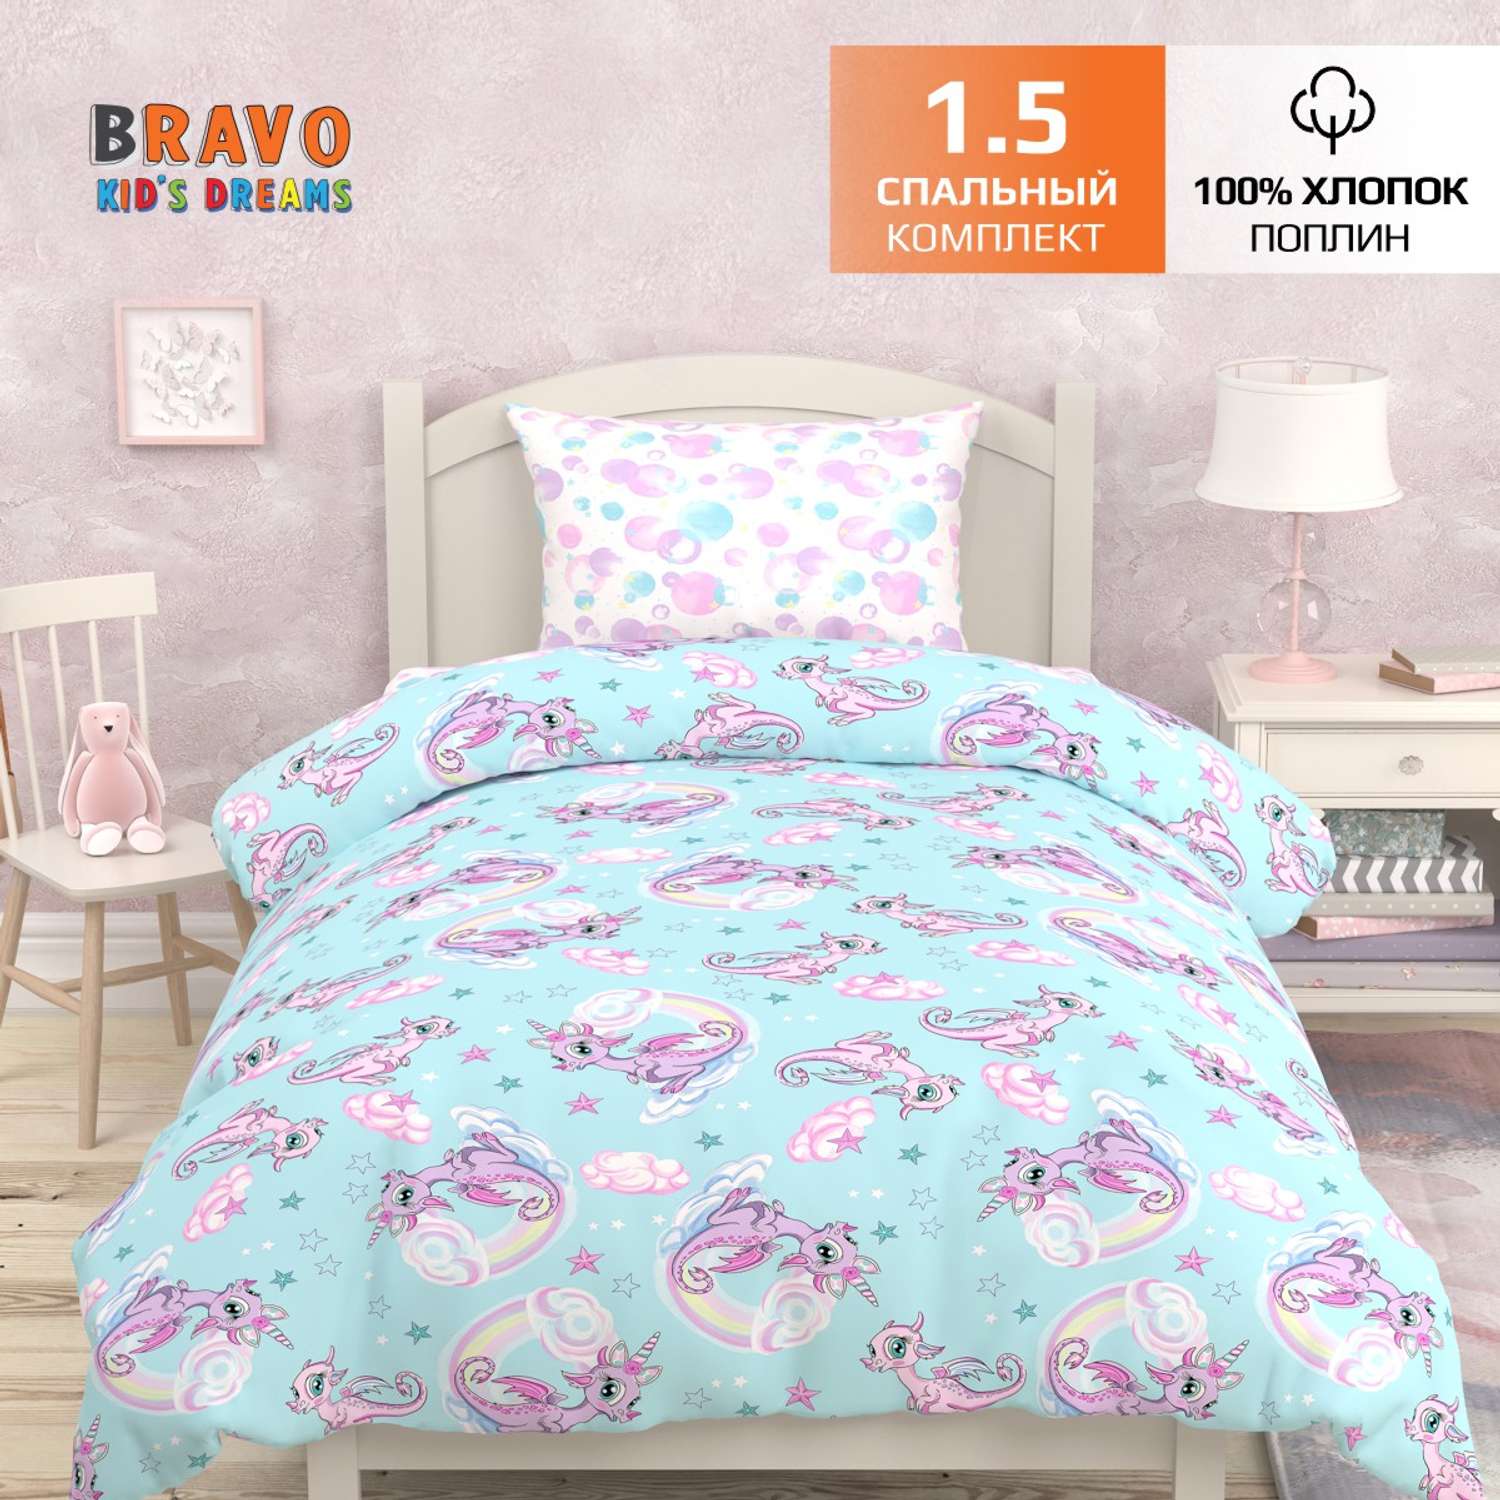 Комплект постельного белья BRAVO kids dreams Единороги 1.5 спальный простыня на резинке 90х200 - фото 2